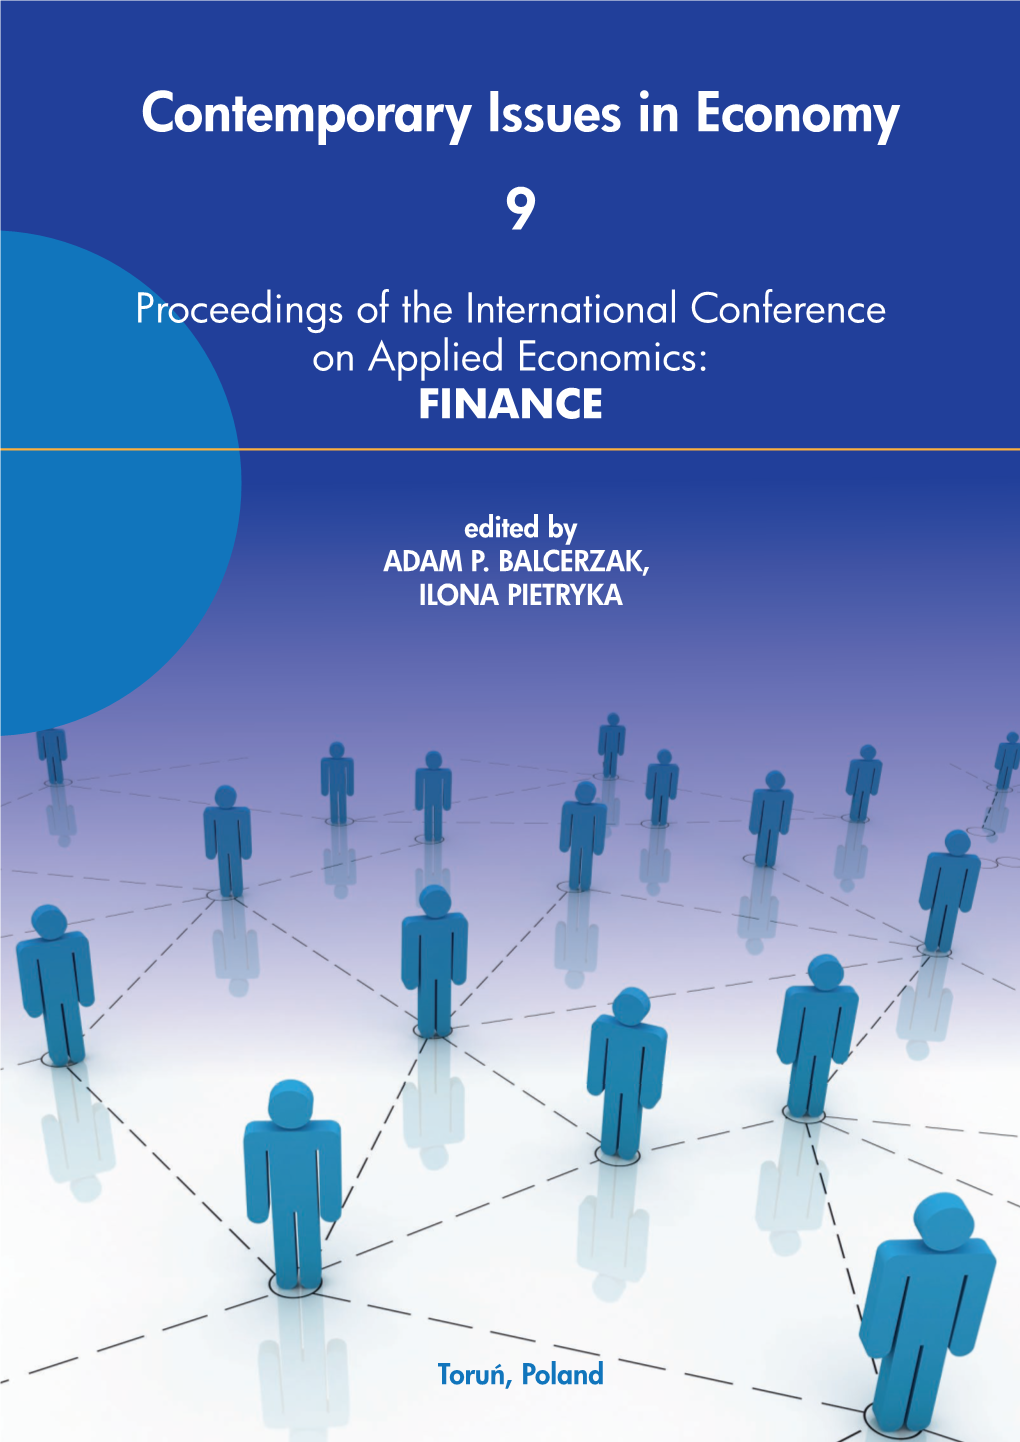 1. Proceedings-Finance